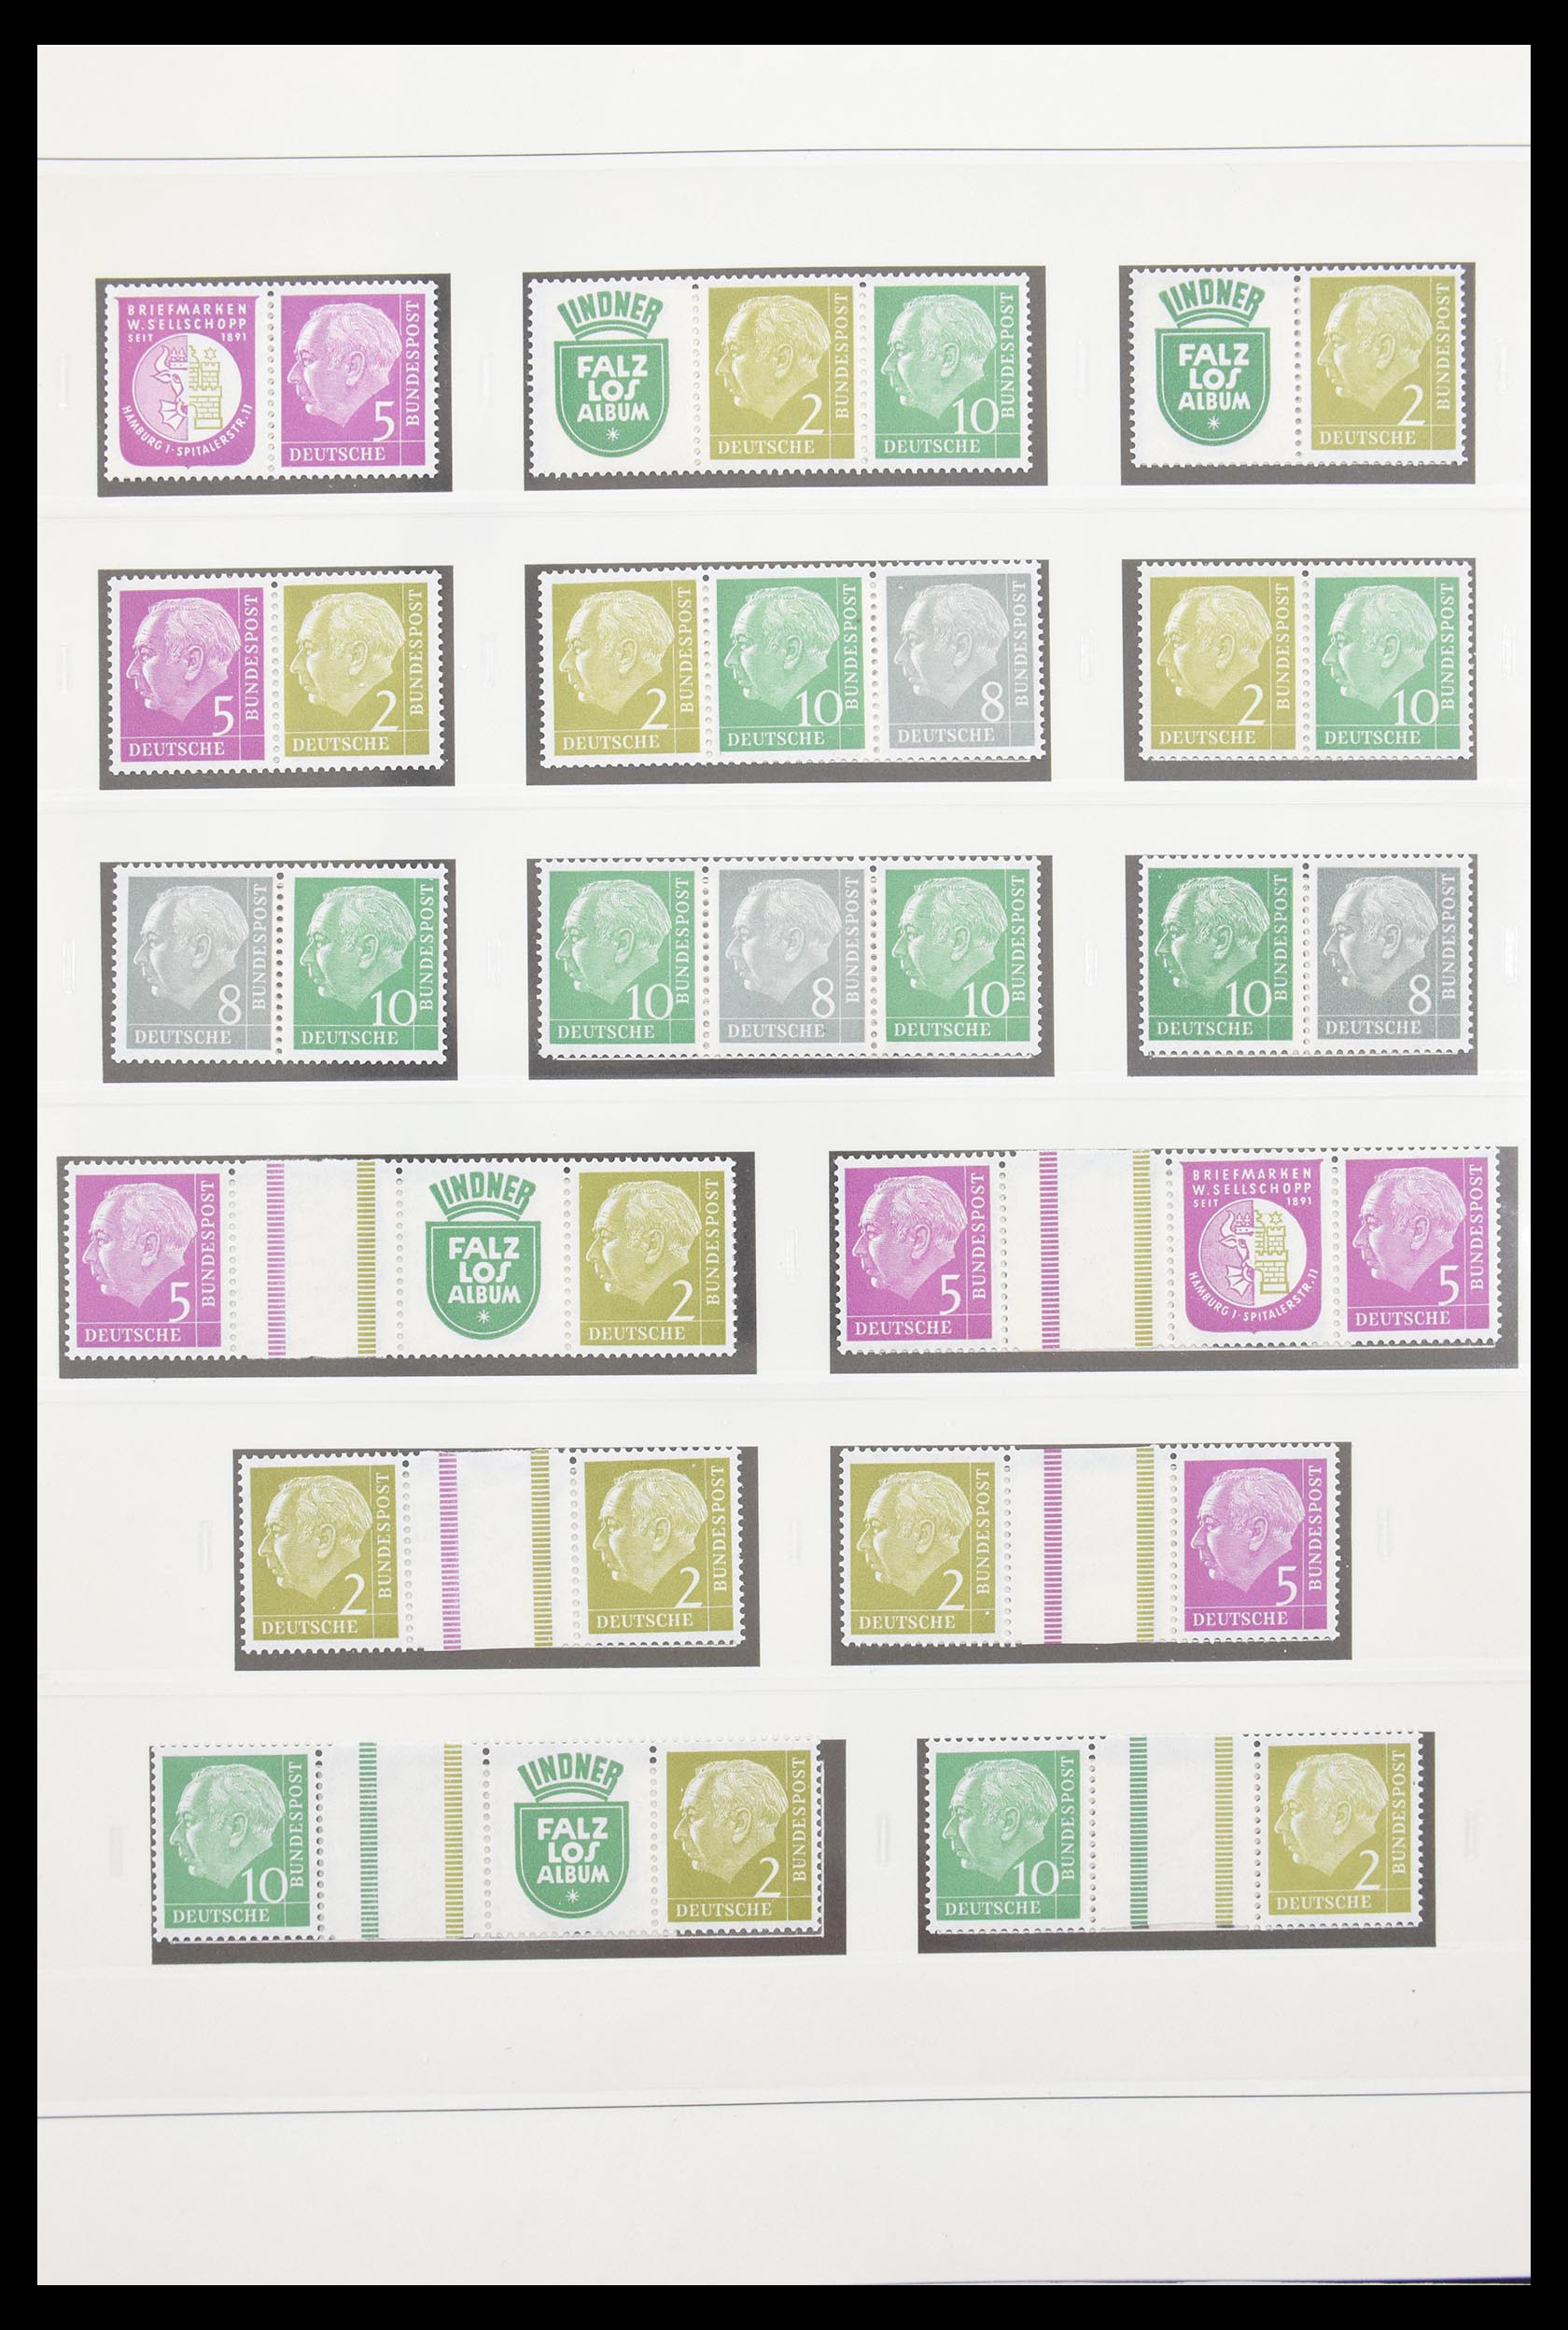 30605 007 - 30605 Bundespost combinations 1951-1974.